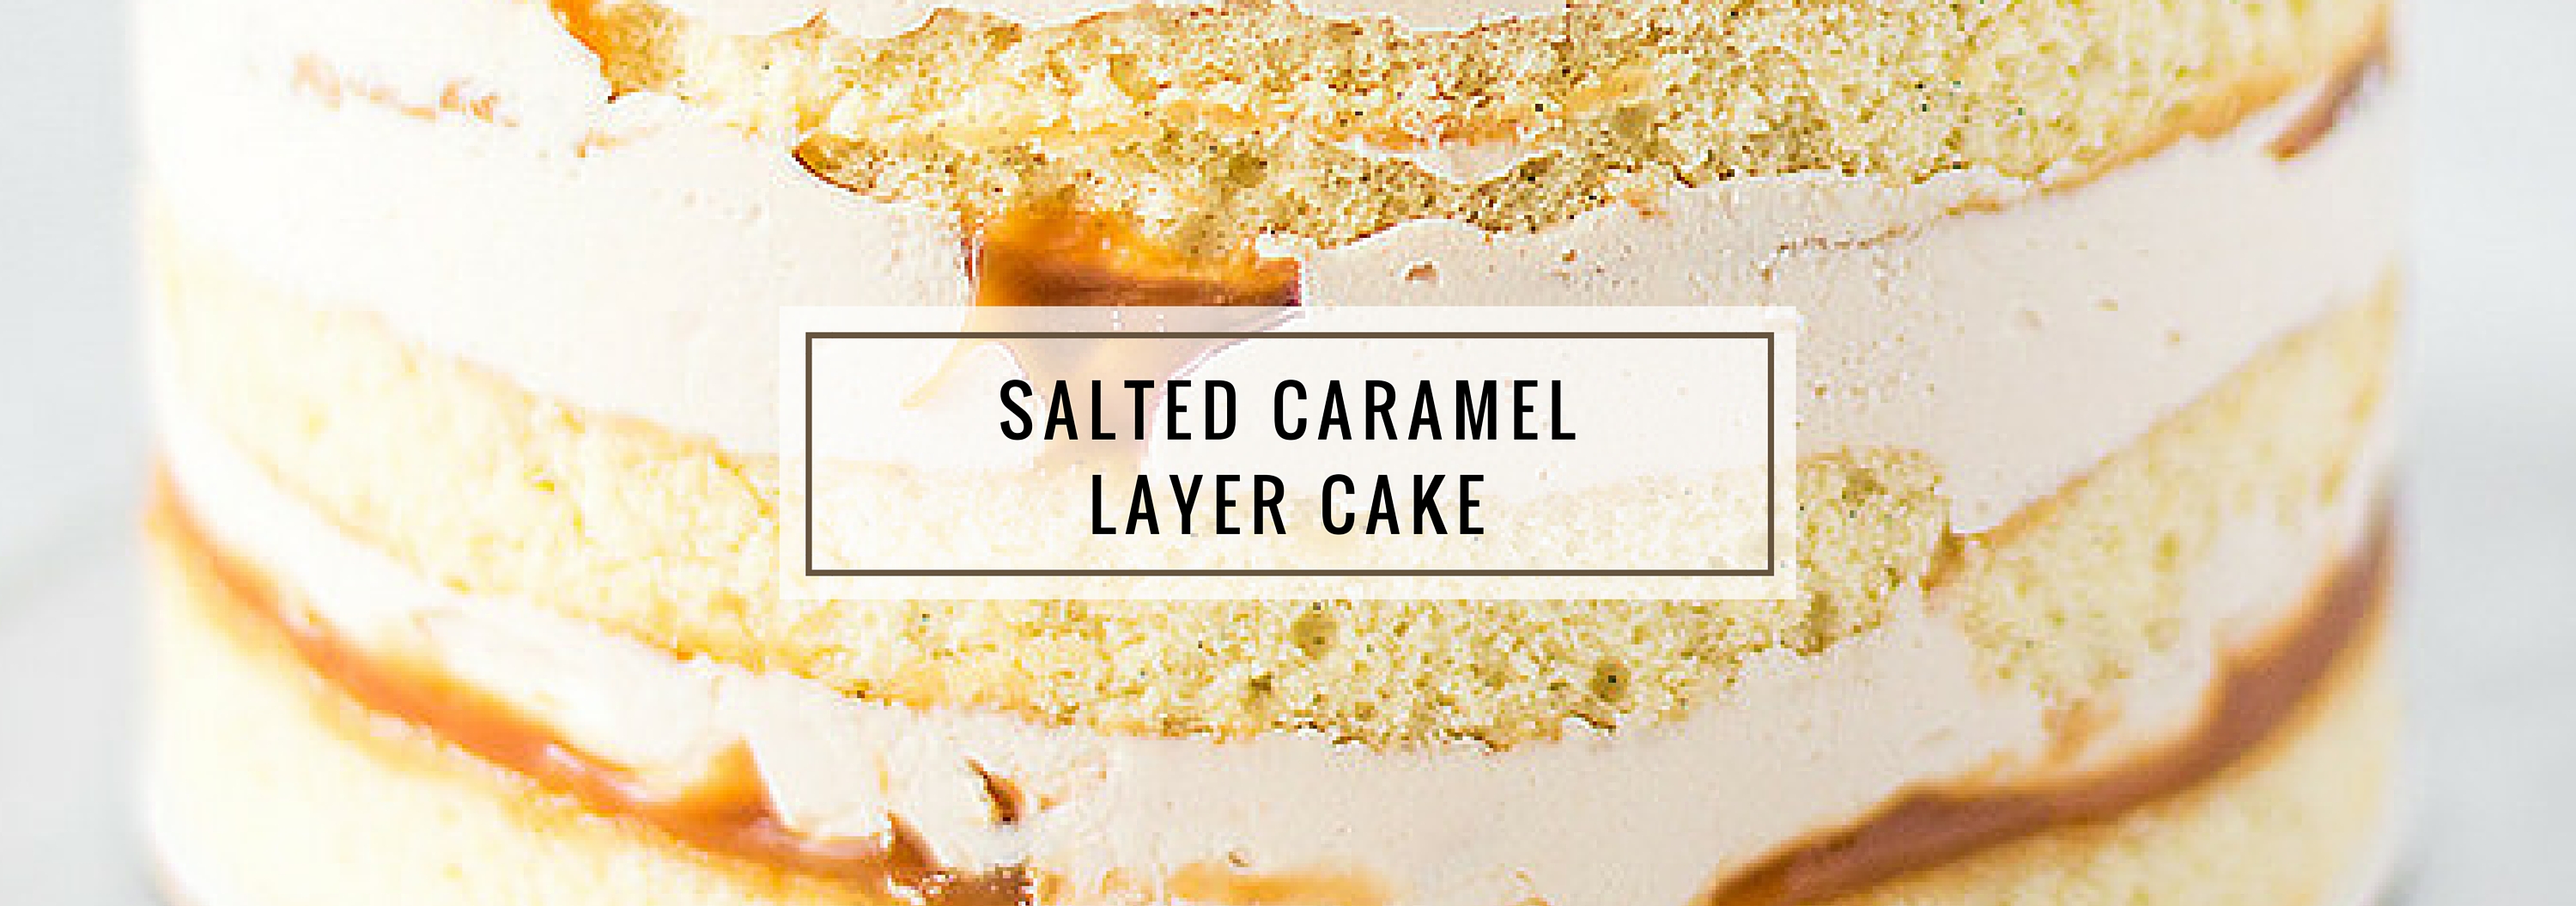 Salted Caramel Layer Cake